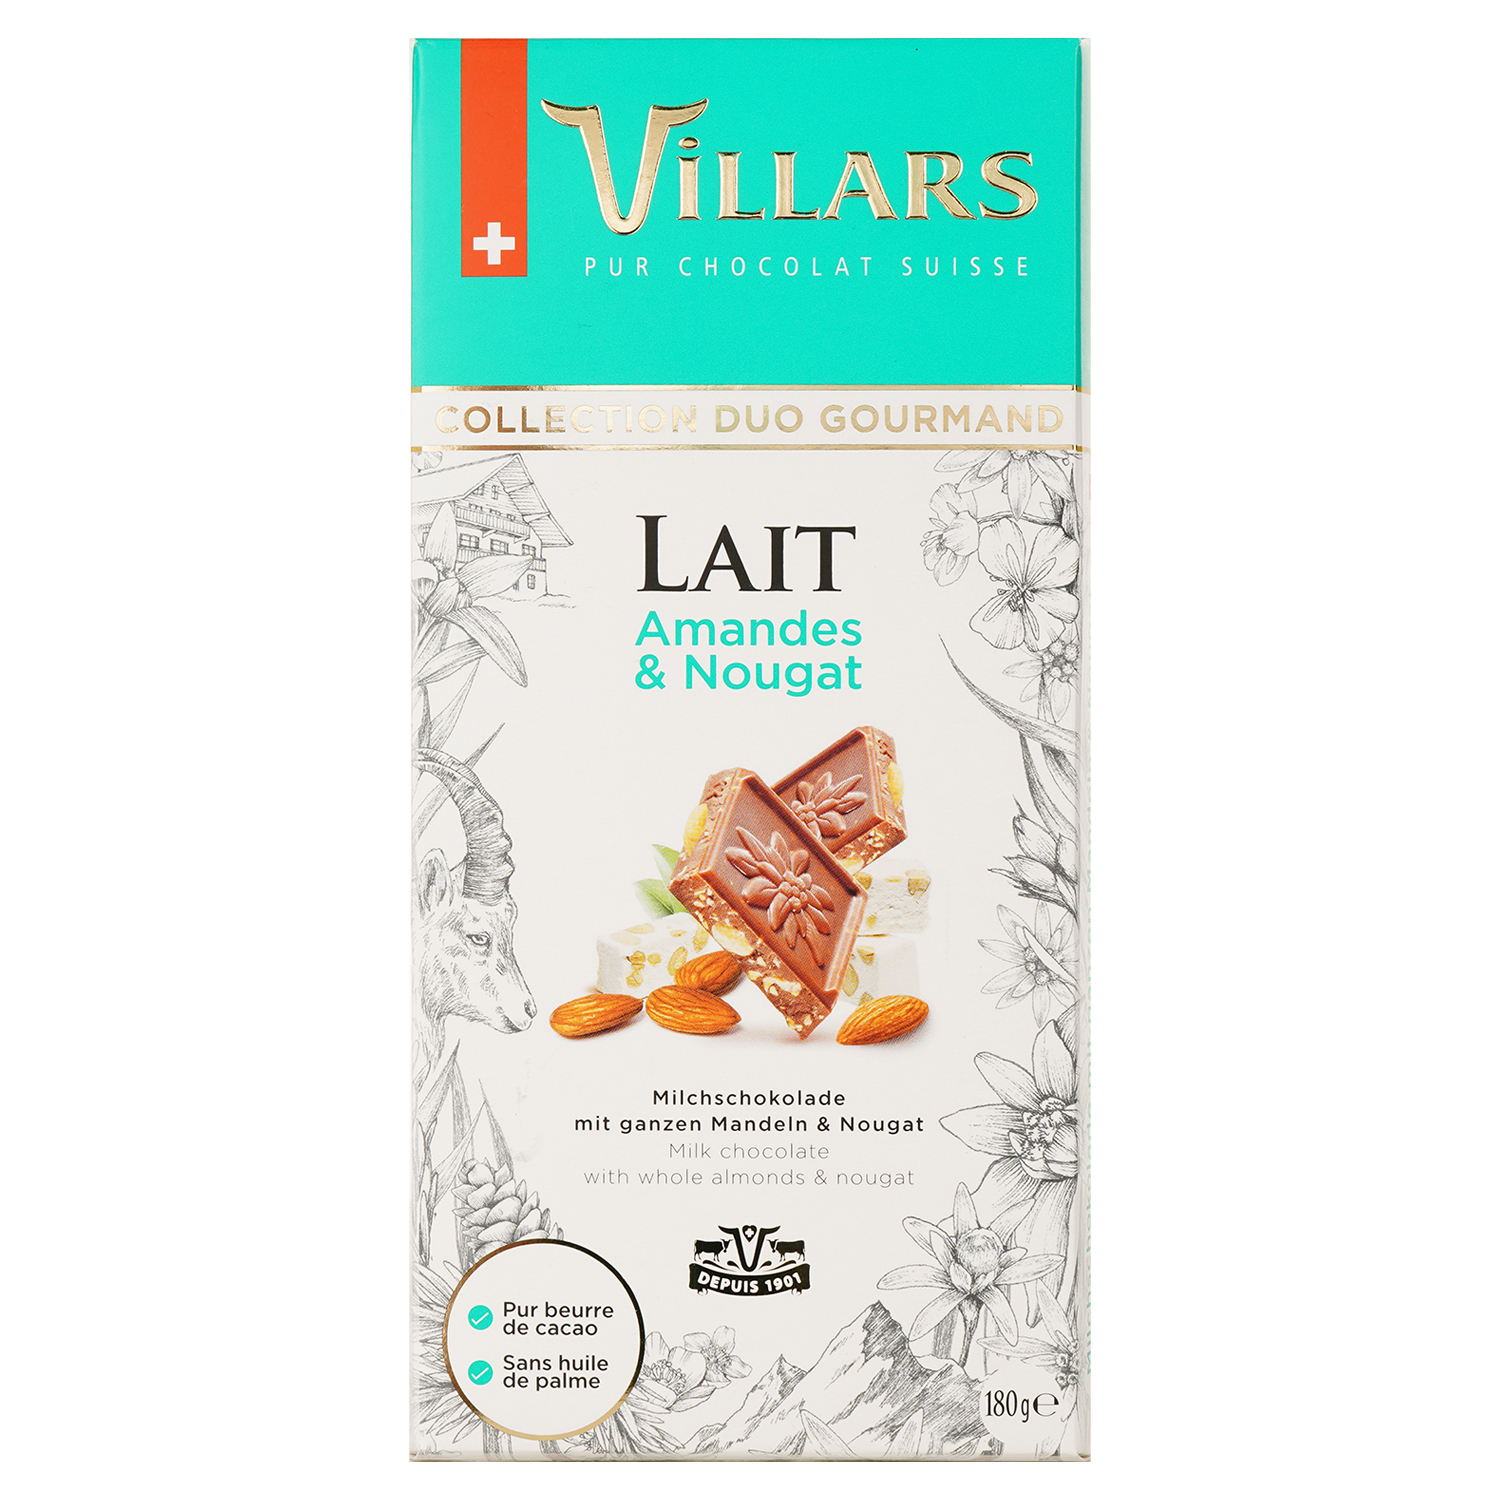 Молочный шоколад Villars Collection Duo Gourmand Lait Amandes & Nougat с миндалем и нугой 180 г - фото 1